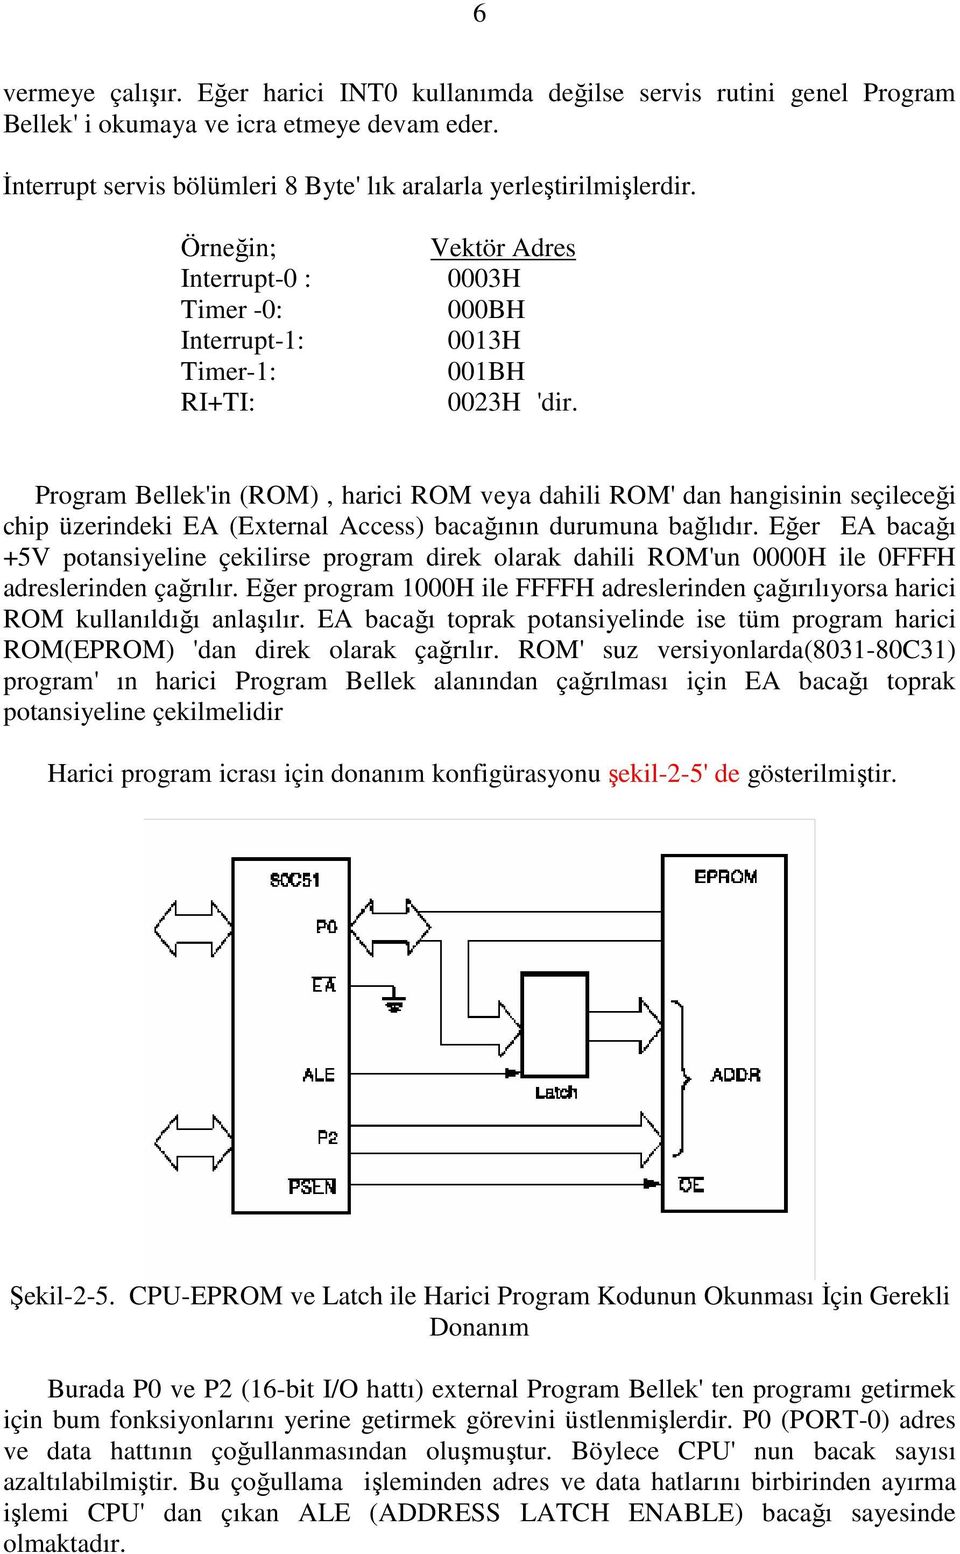 Program Bellek'in (ROM), harici ROM veya dahili ROM' dan hangisinin seçileceği chip üzerindeki EA (External Access) bacağının durumuna bağlıdır.